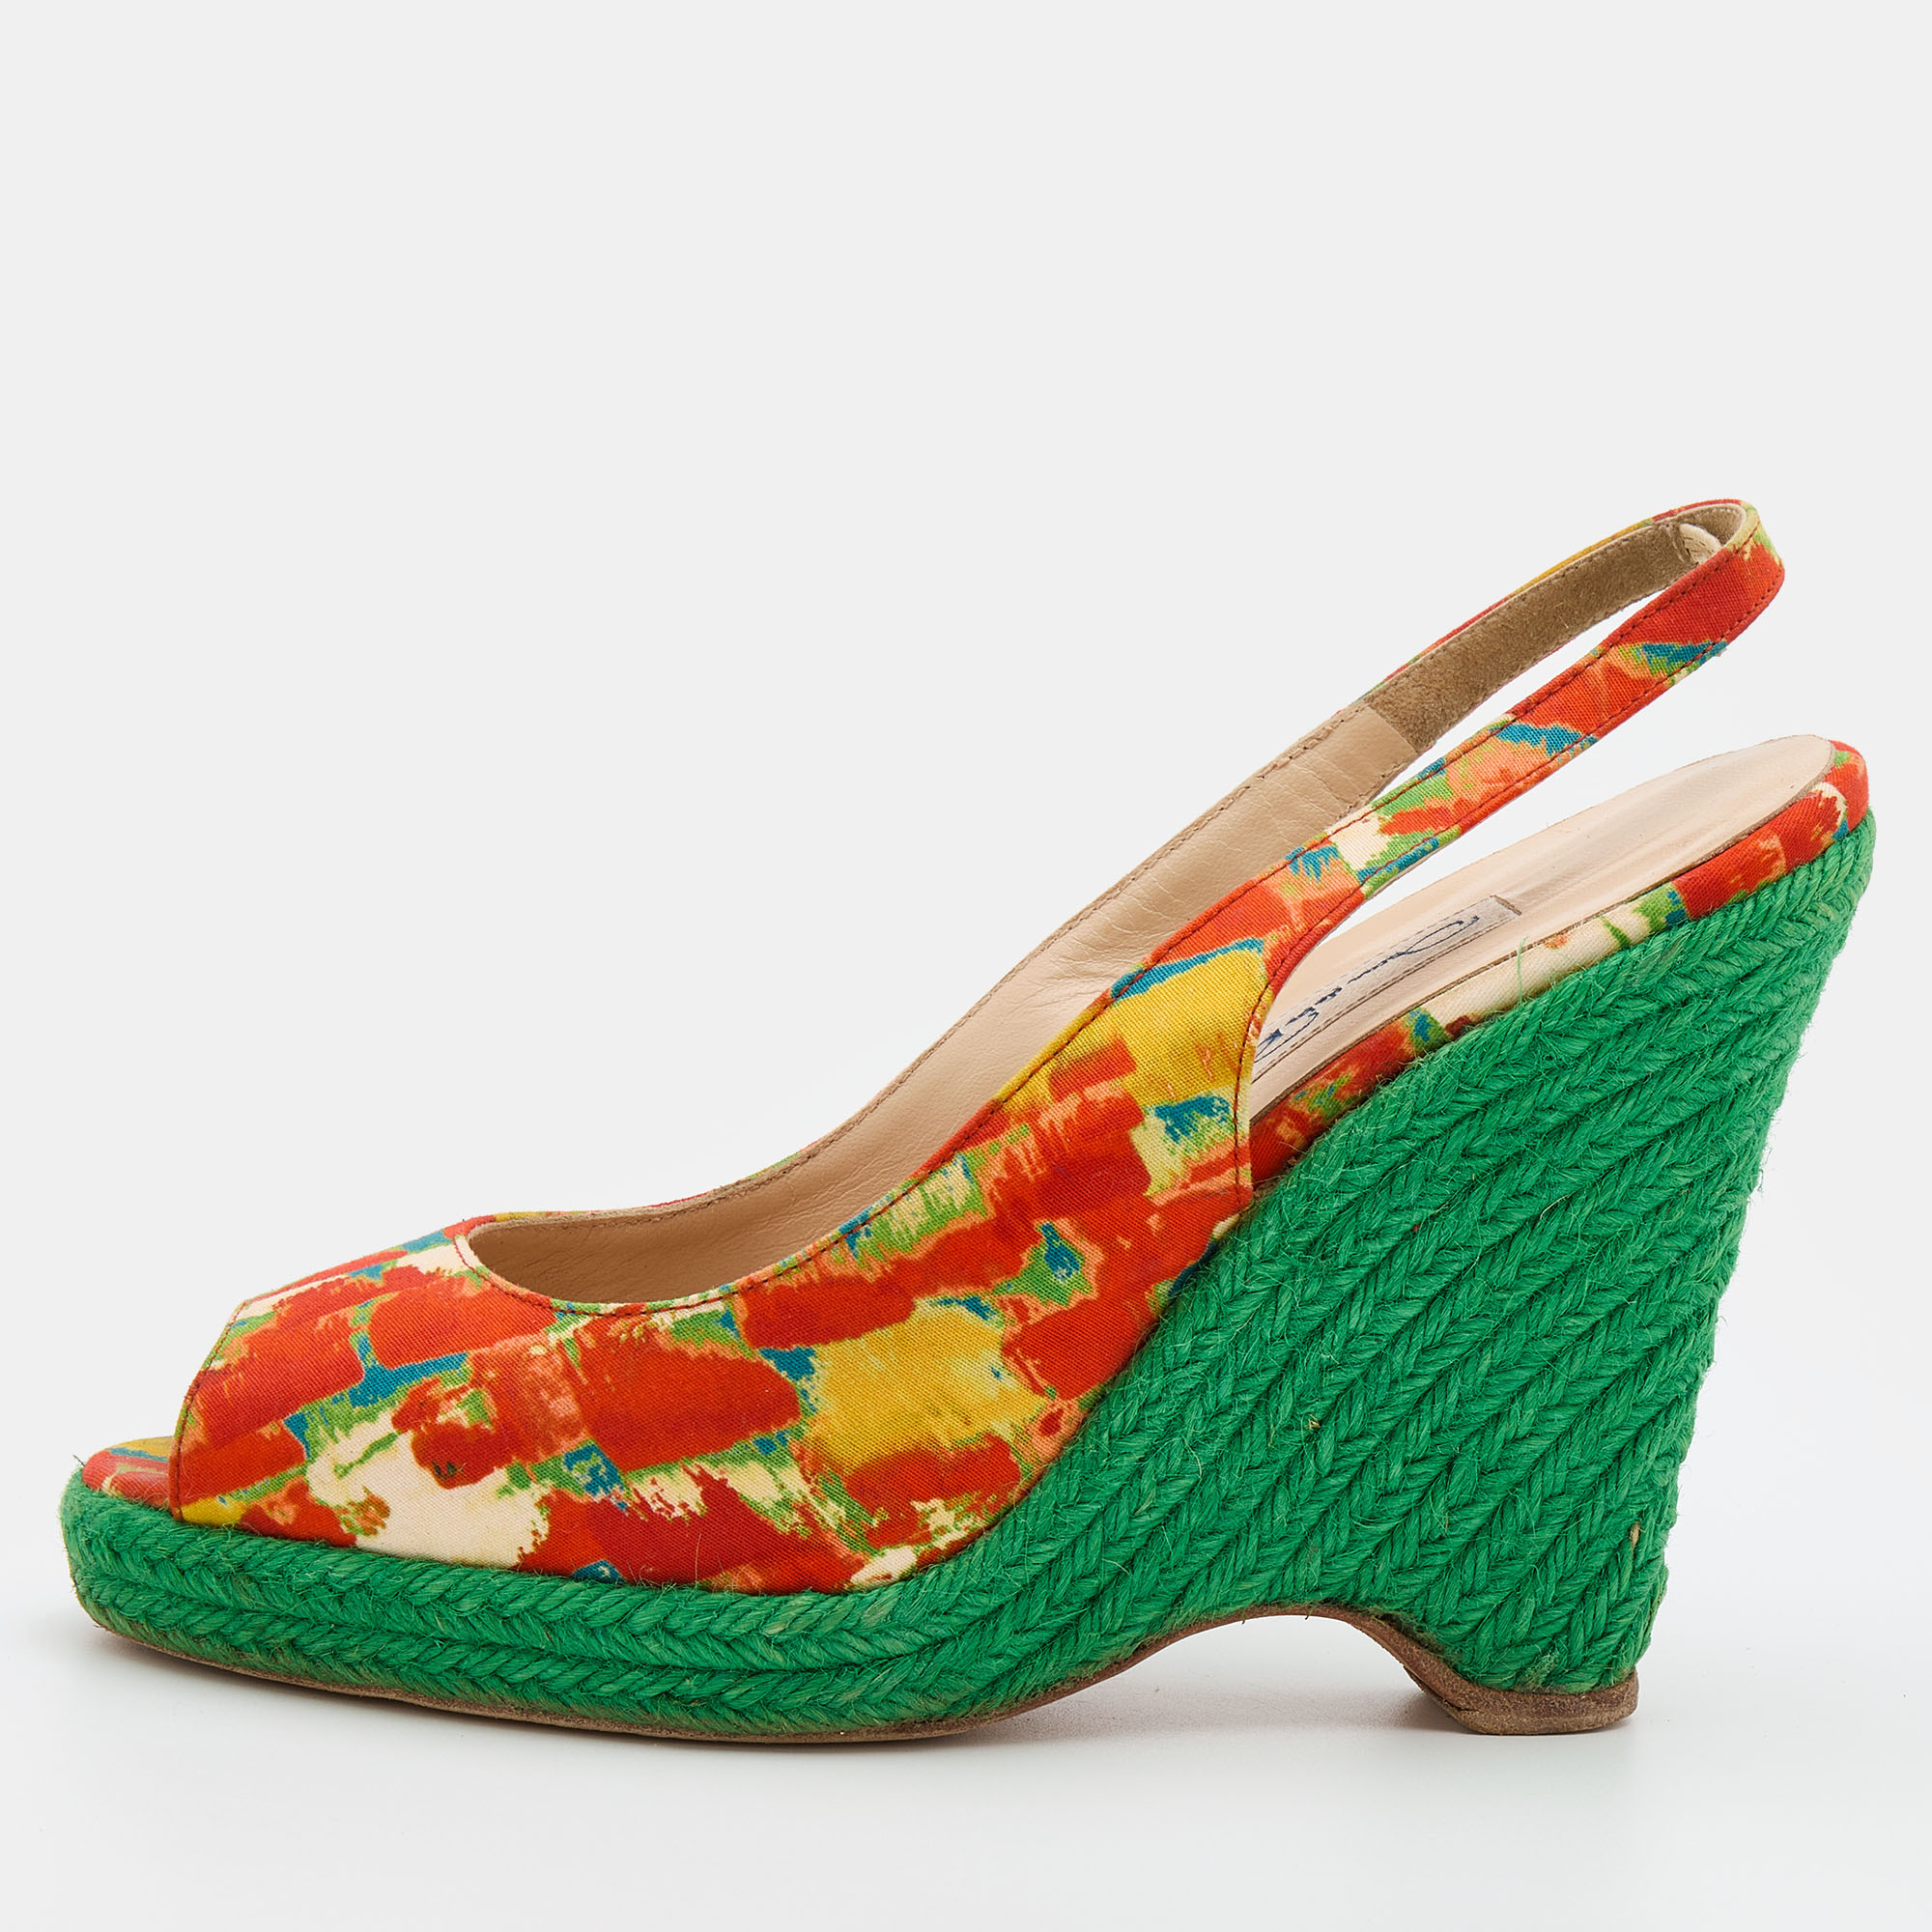 Oscar de la renta multicolor fabric espadrille platform wedge peep-toe slingback sandals size 40